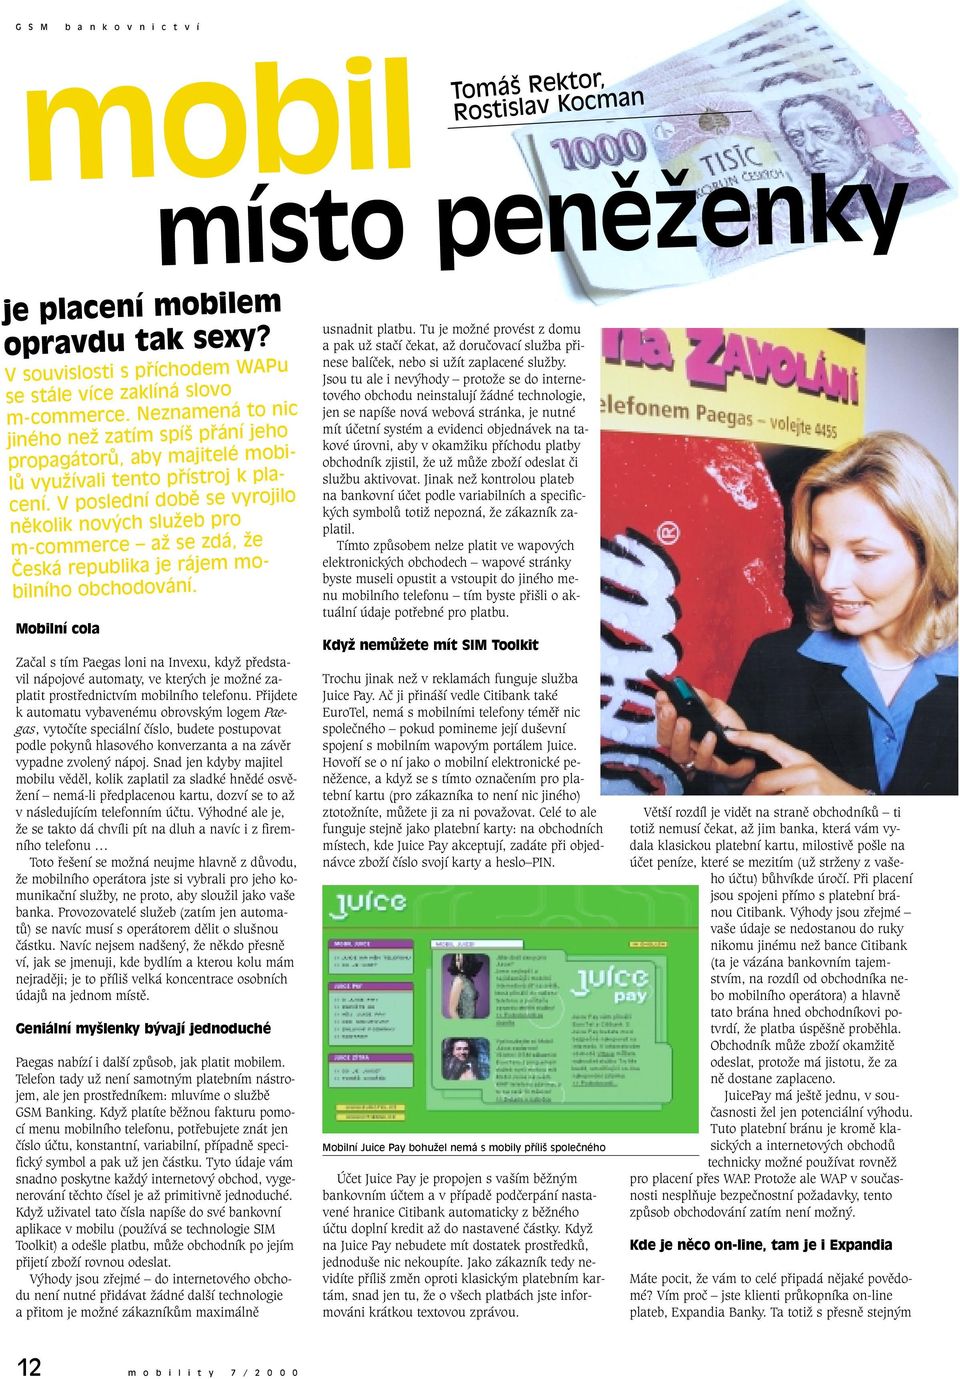 V poslední době se vyrojilo několik nových služeb pro m-commerce až se zdá, že Česká republika je rájem mobilního obchodování.